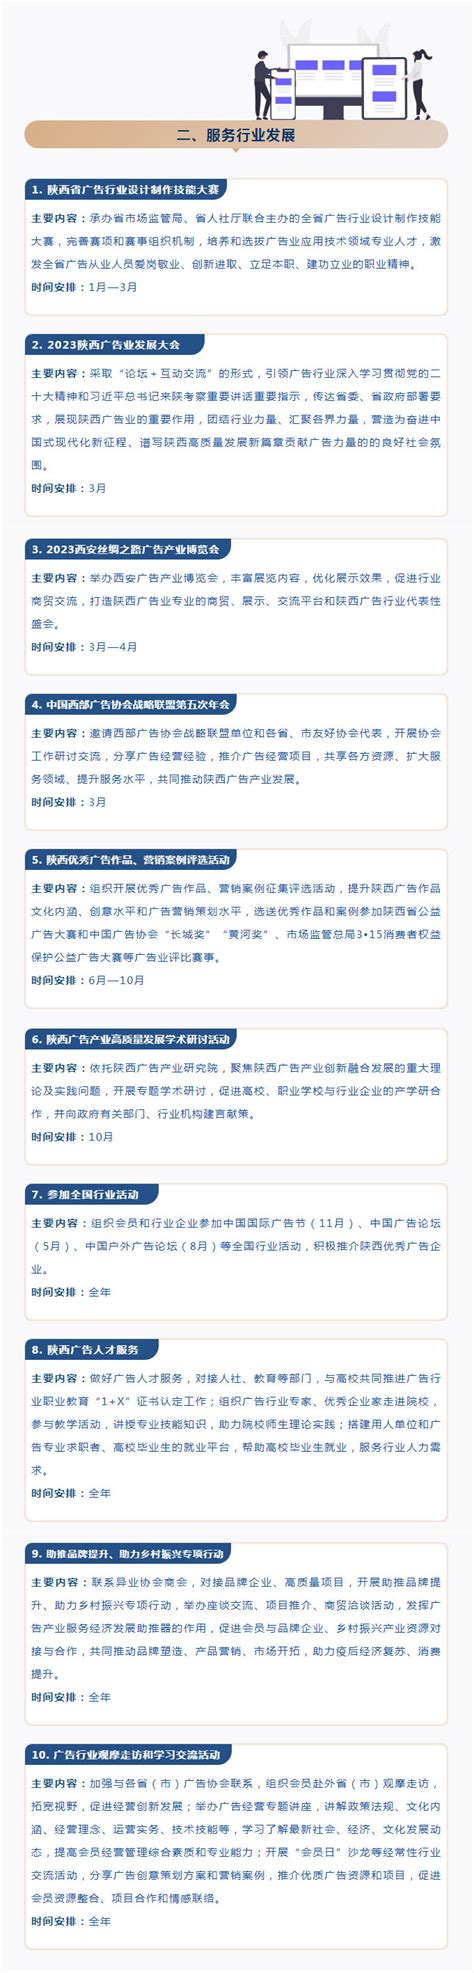 陕西广电e+TV高清数字业务整合营销推广策划-上海营销策划公司-尚略广告